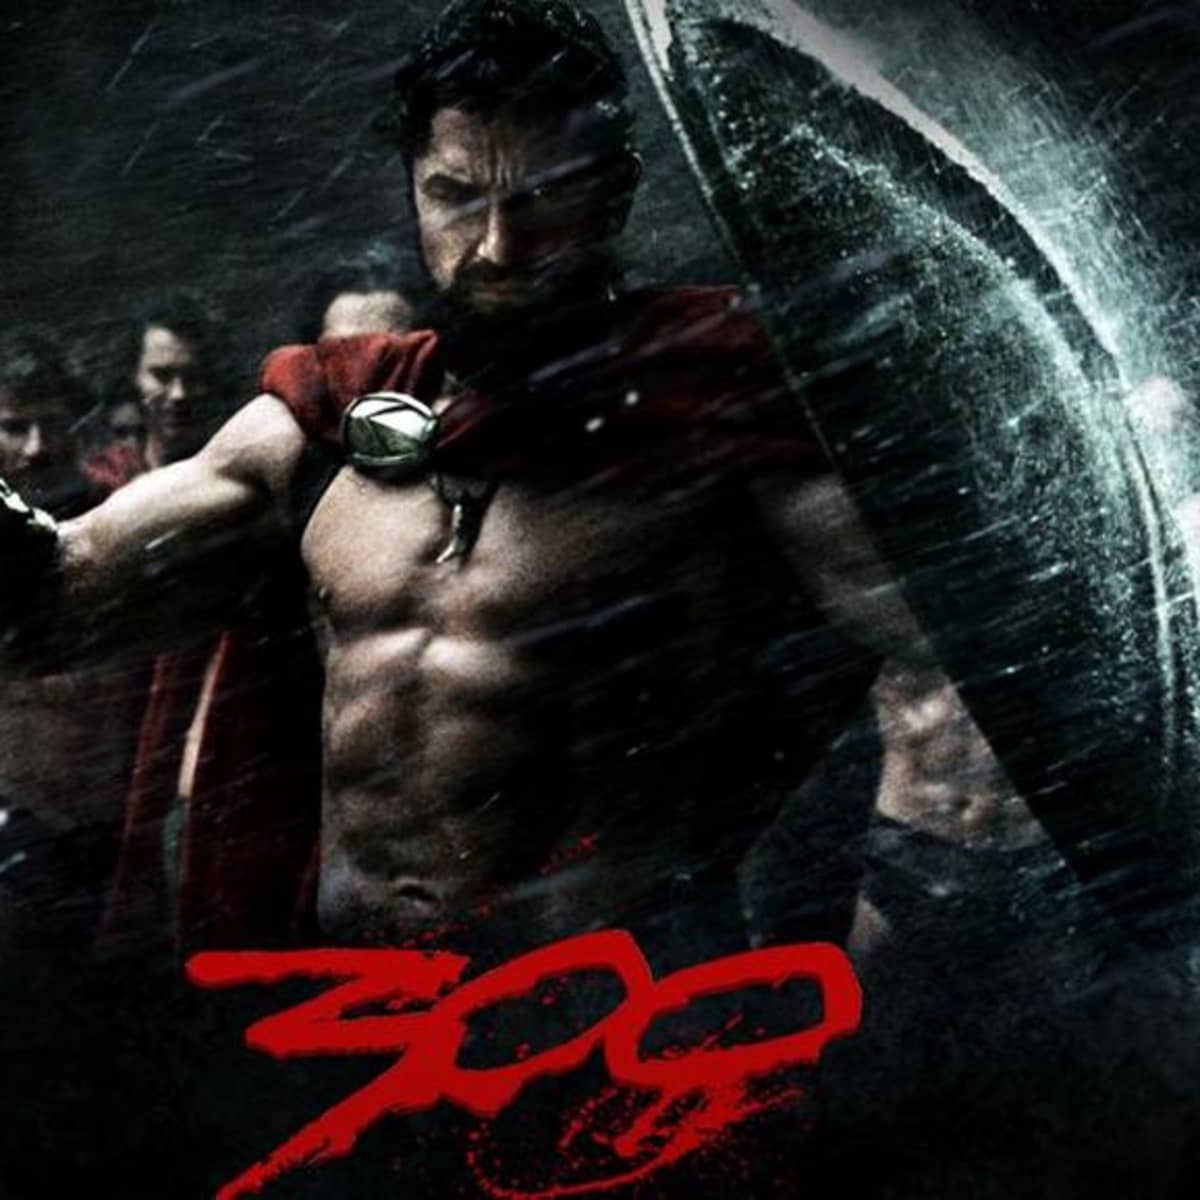 300 movie analysis